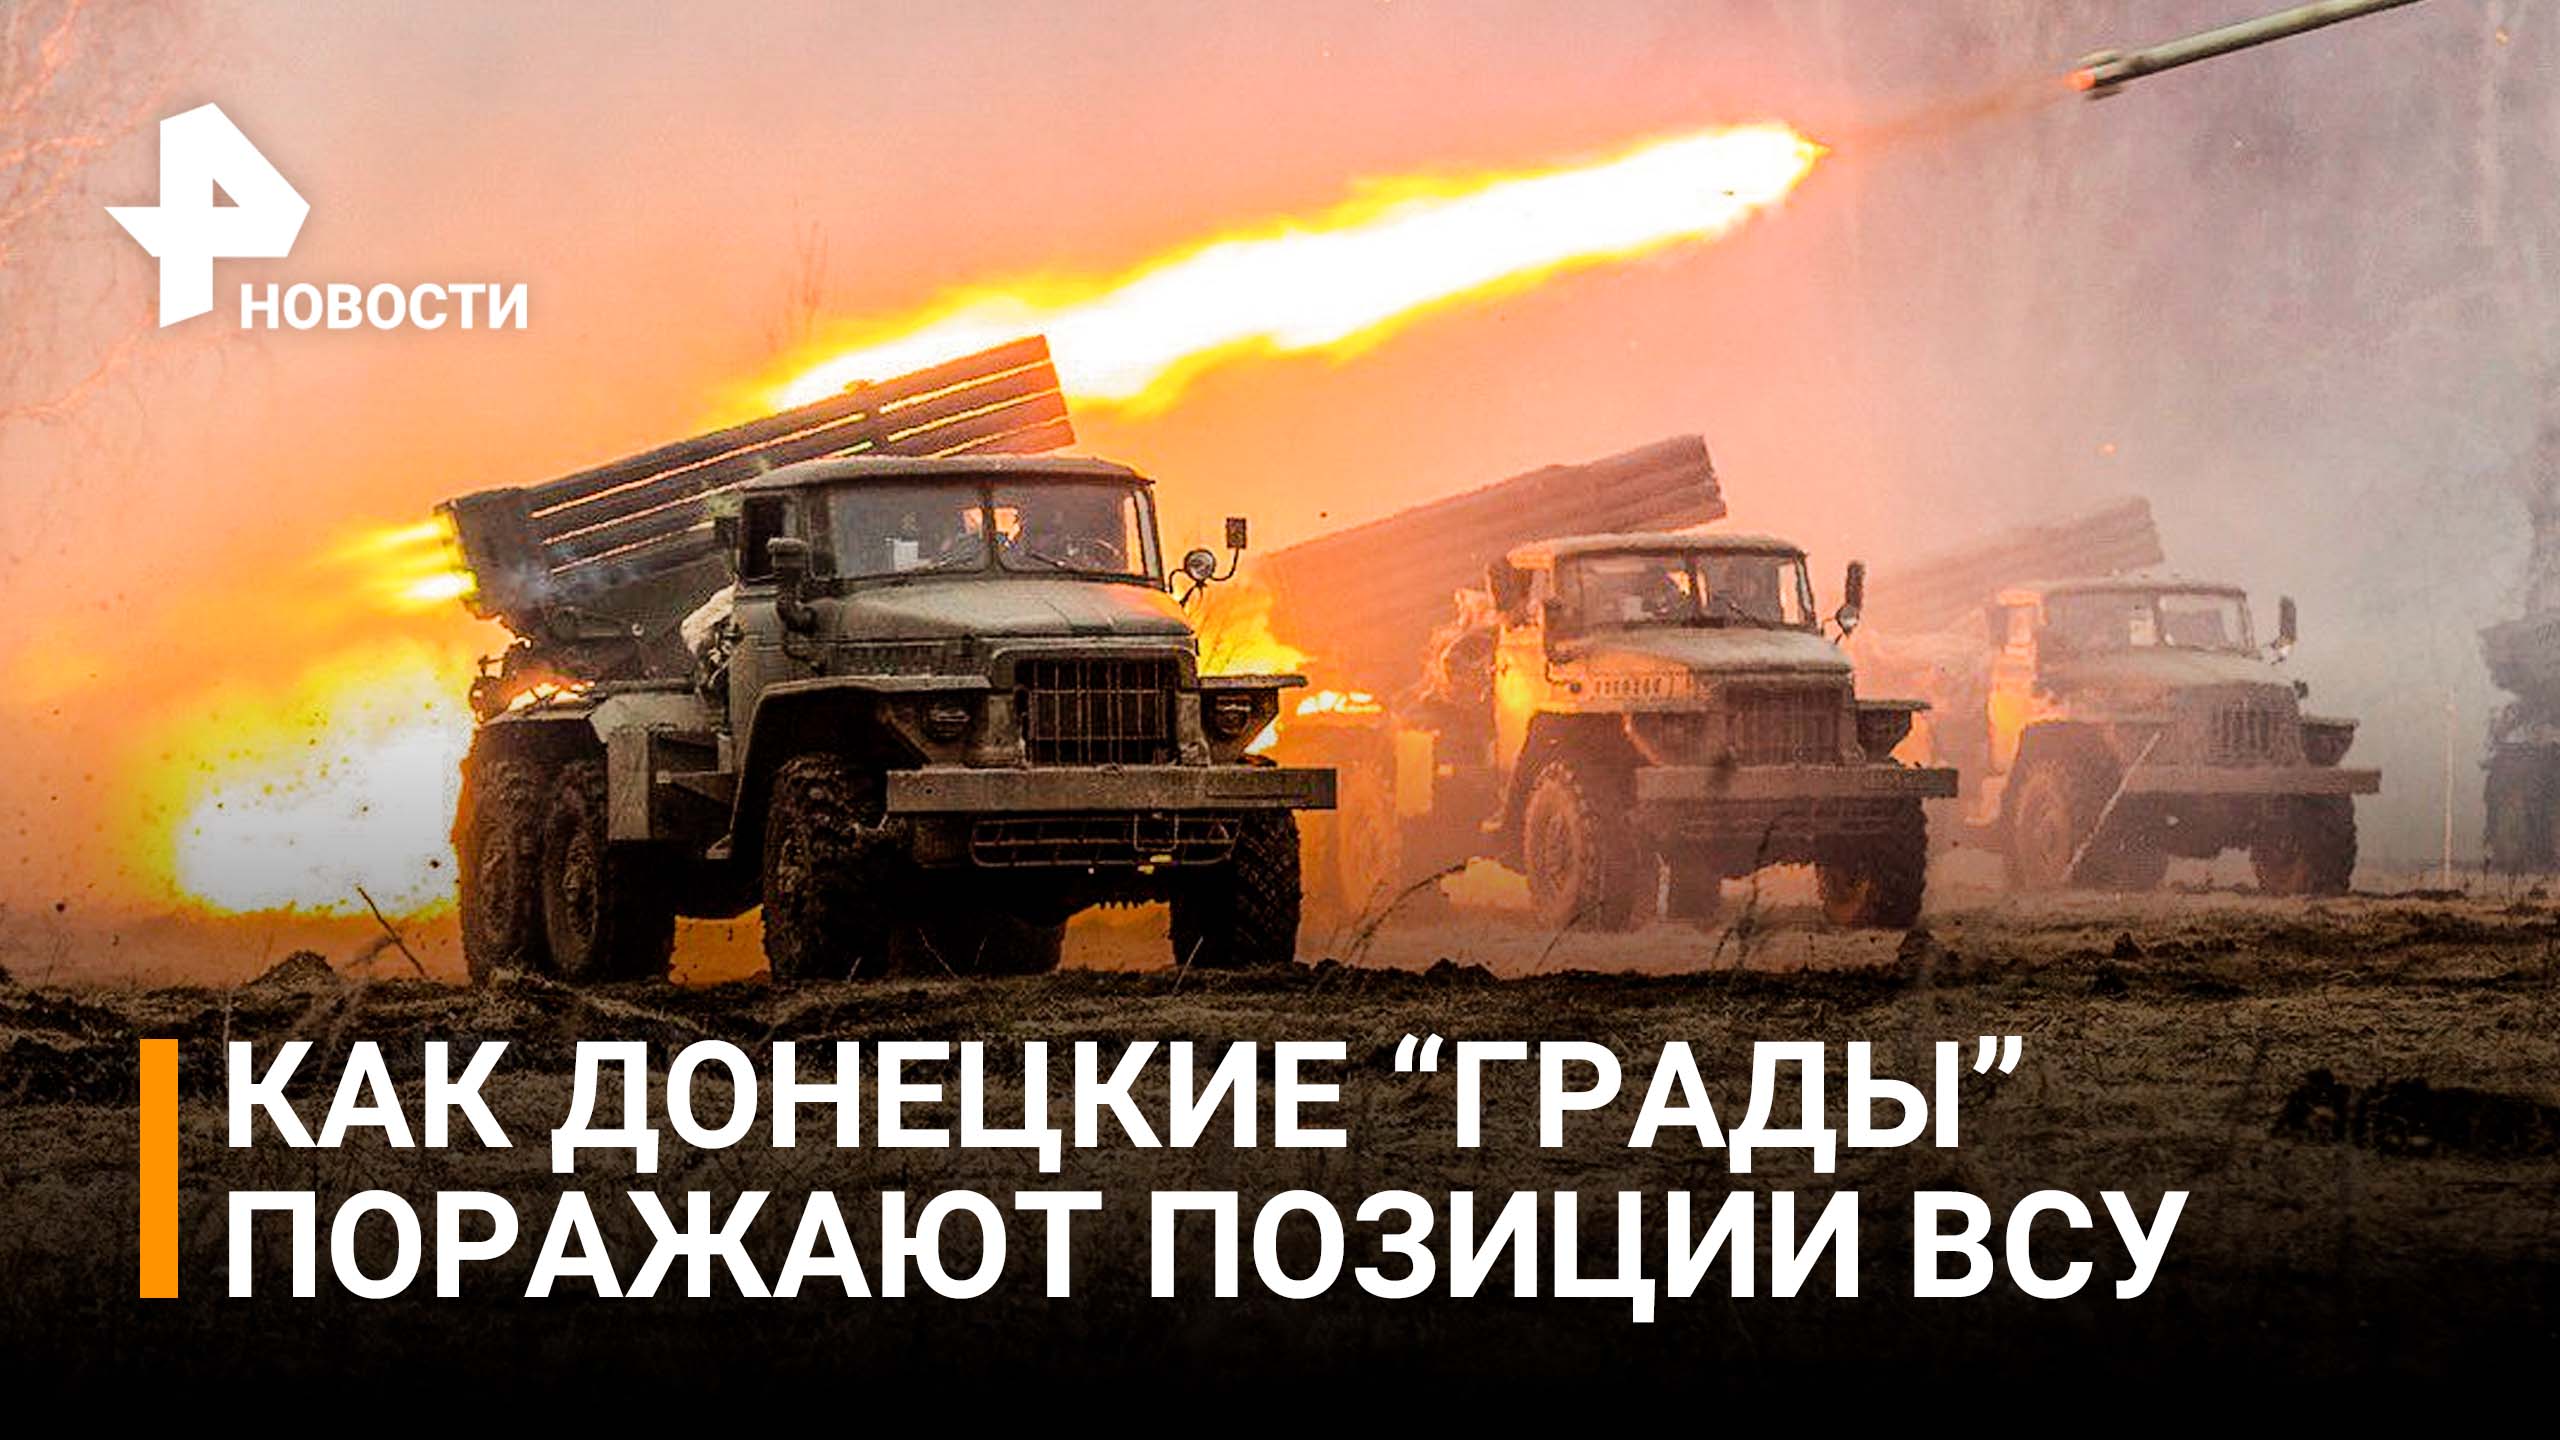 Силы ДНР нанесли сокрушительный удар по позициям ВСУ под Авдеевкой / РЕН Новости